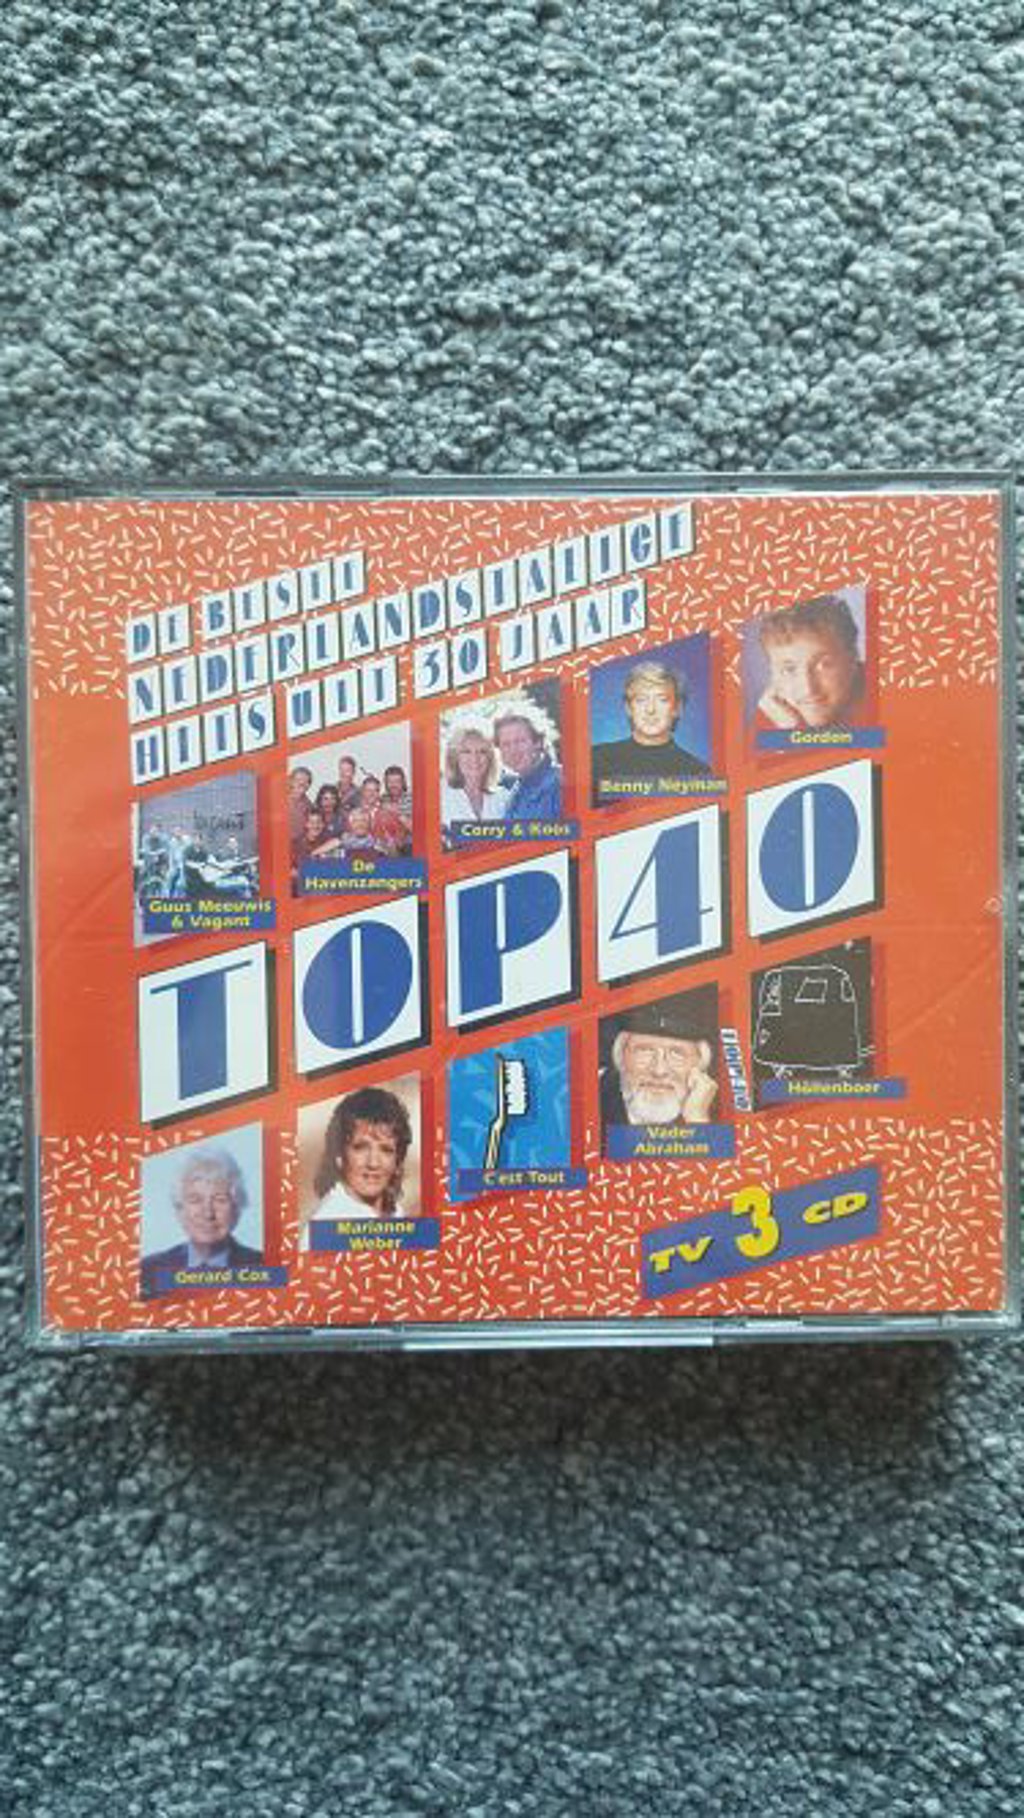 De beste nederlandstalige hits uit 30 jaar top 40 – 3cd